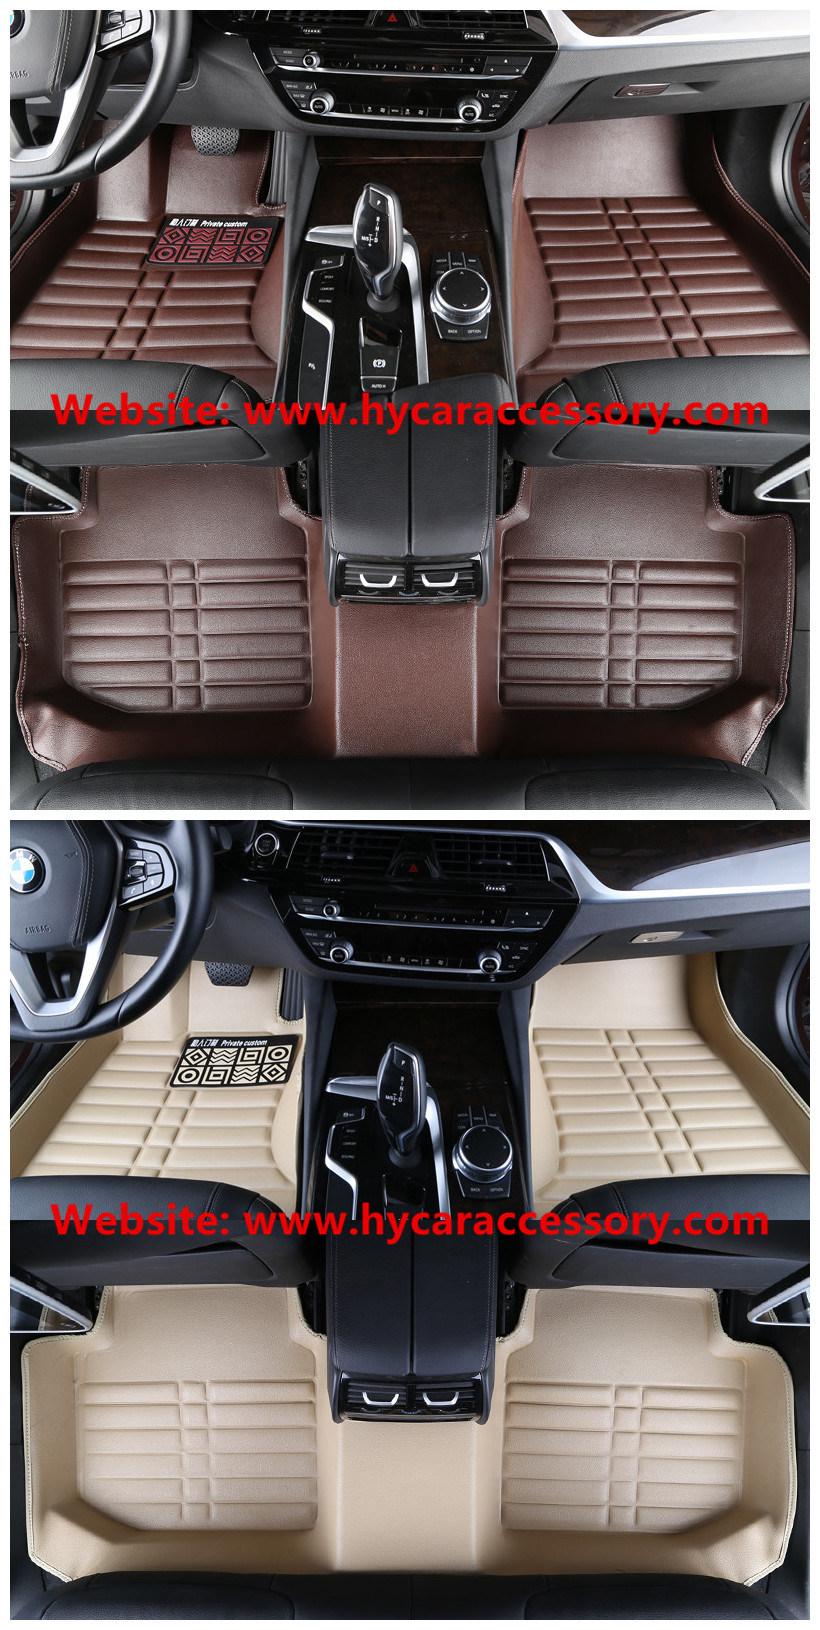 Hot Sale Waterproof Wear Leather 5D Anti Slip Auto Carpet